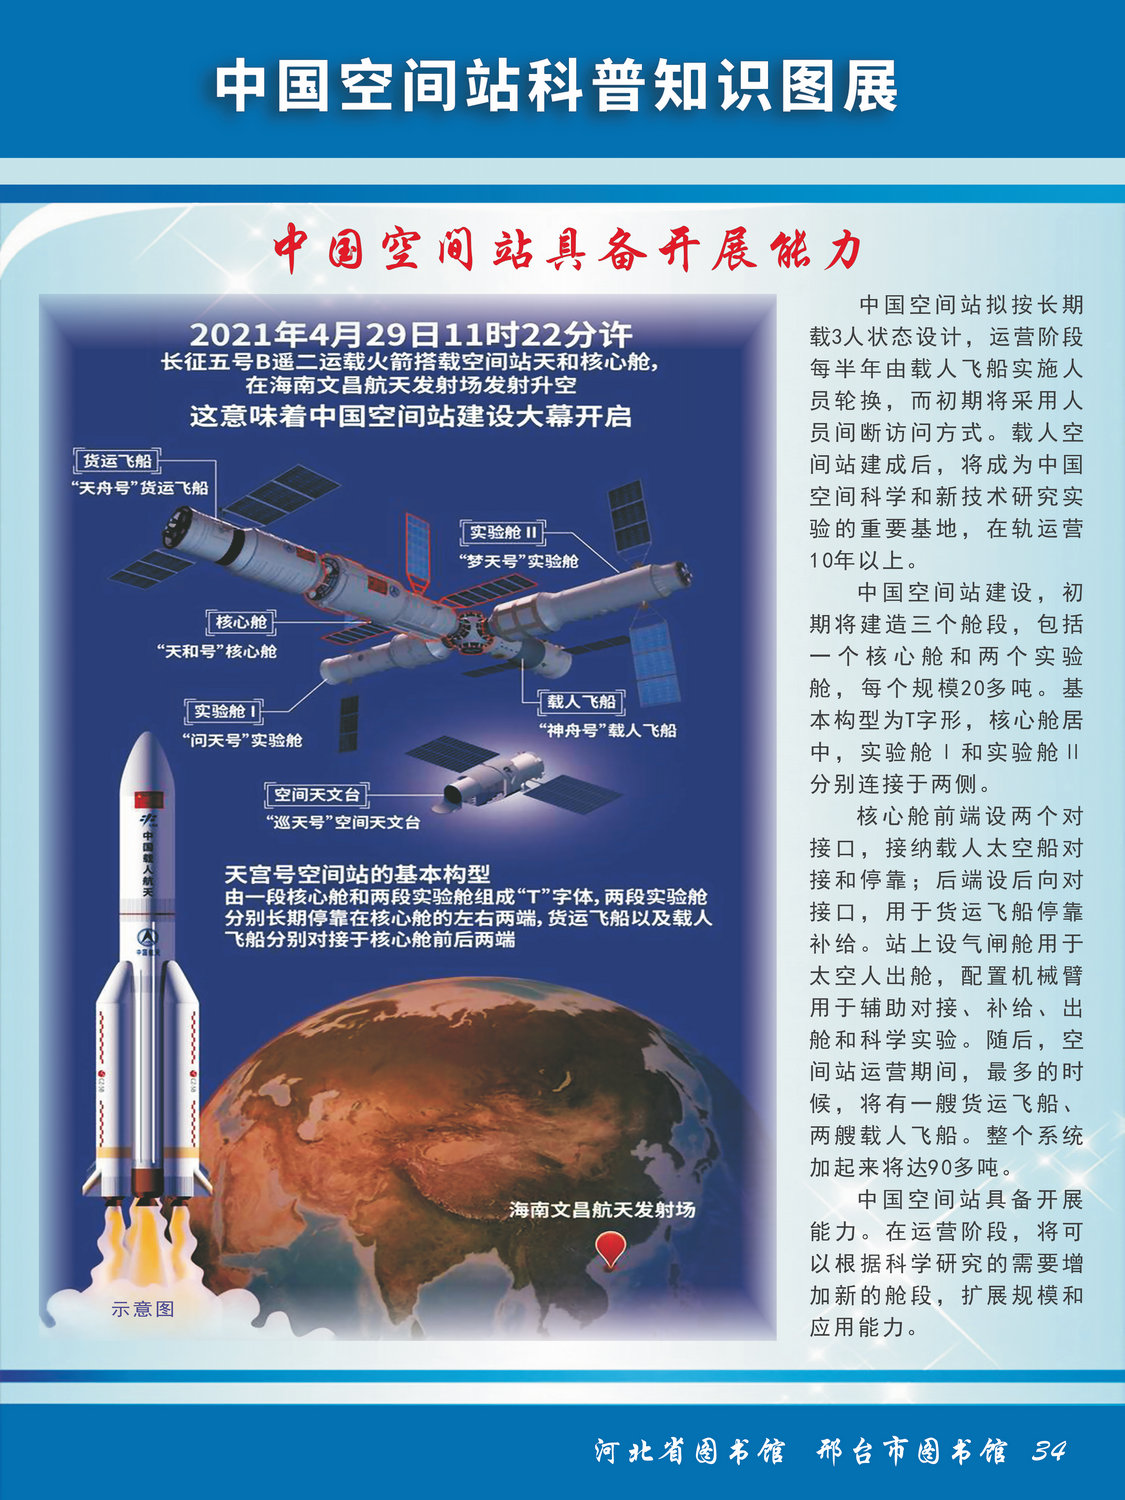 中国空间站科普知识图文展_图34